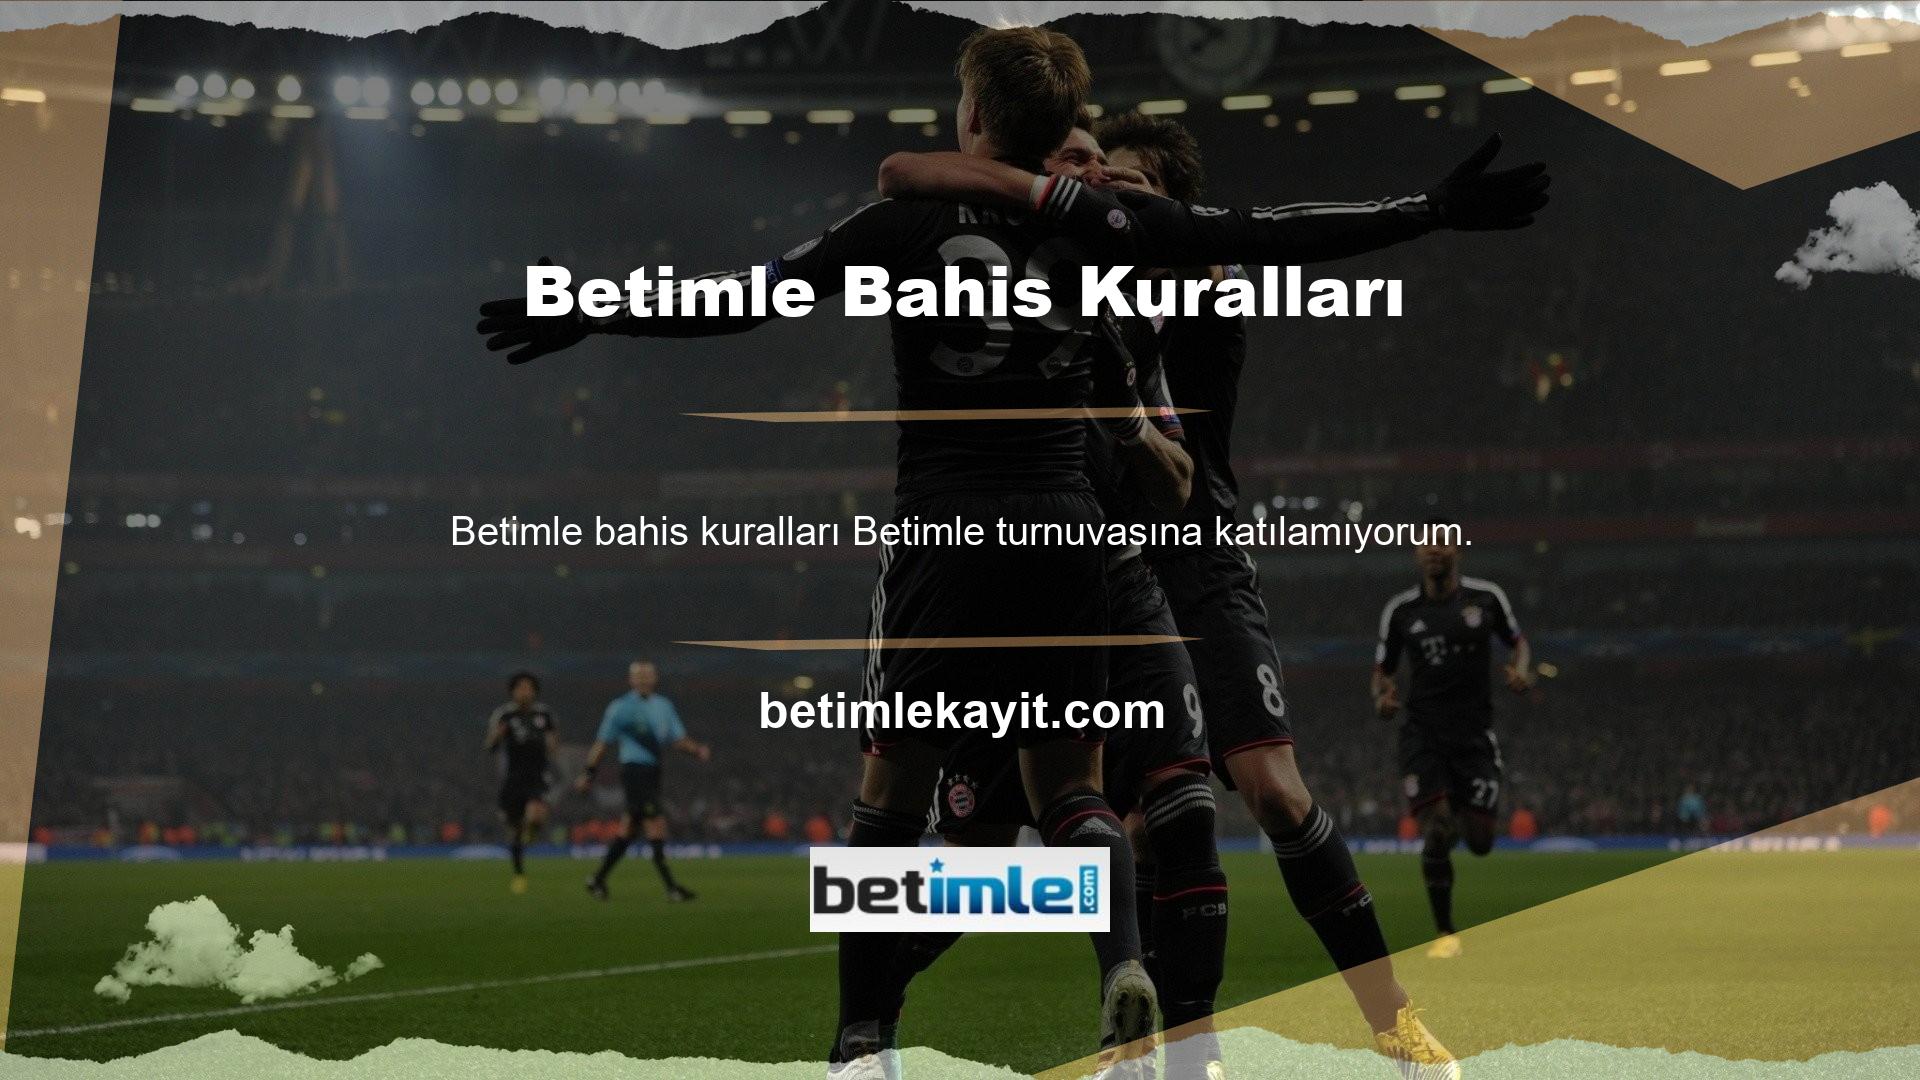 Betimle, Türk online slot şirketlerinden biridir